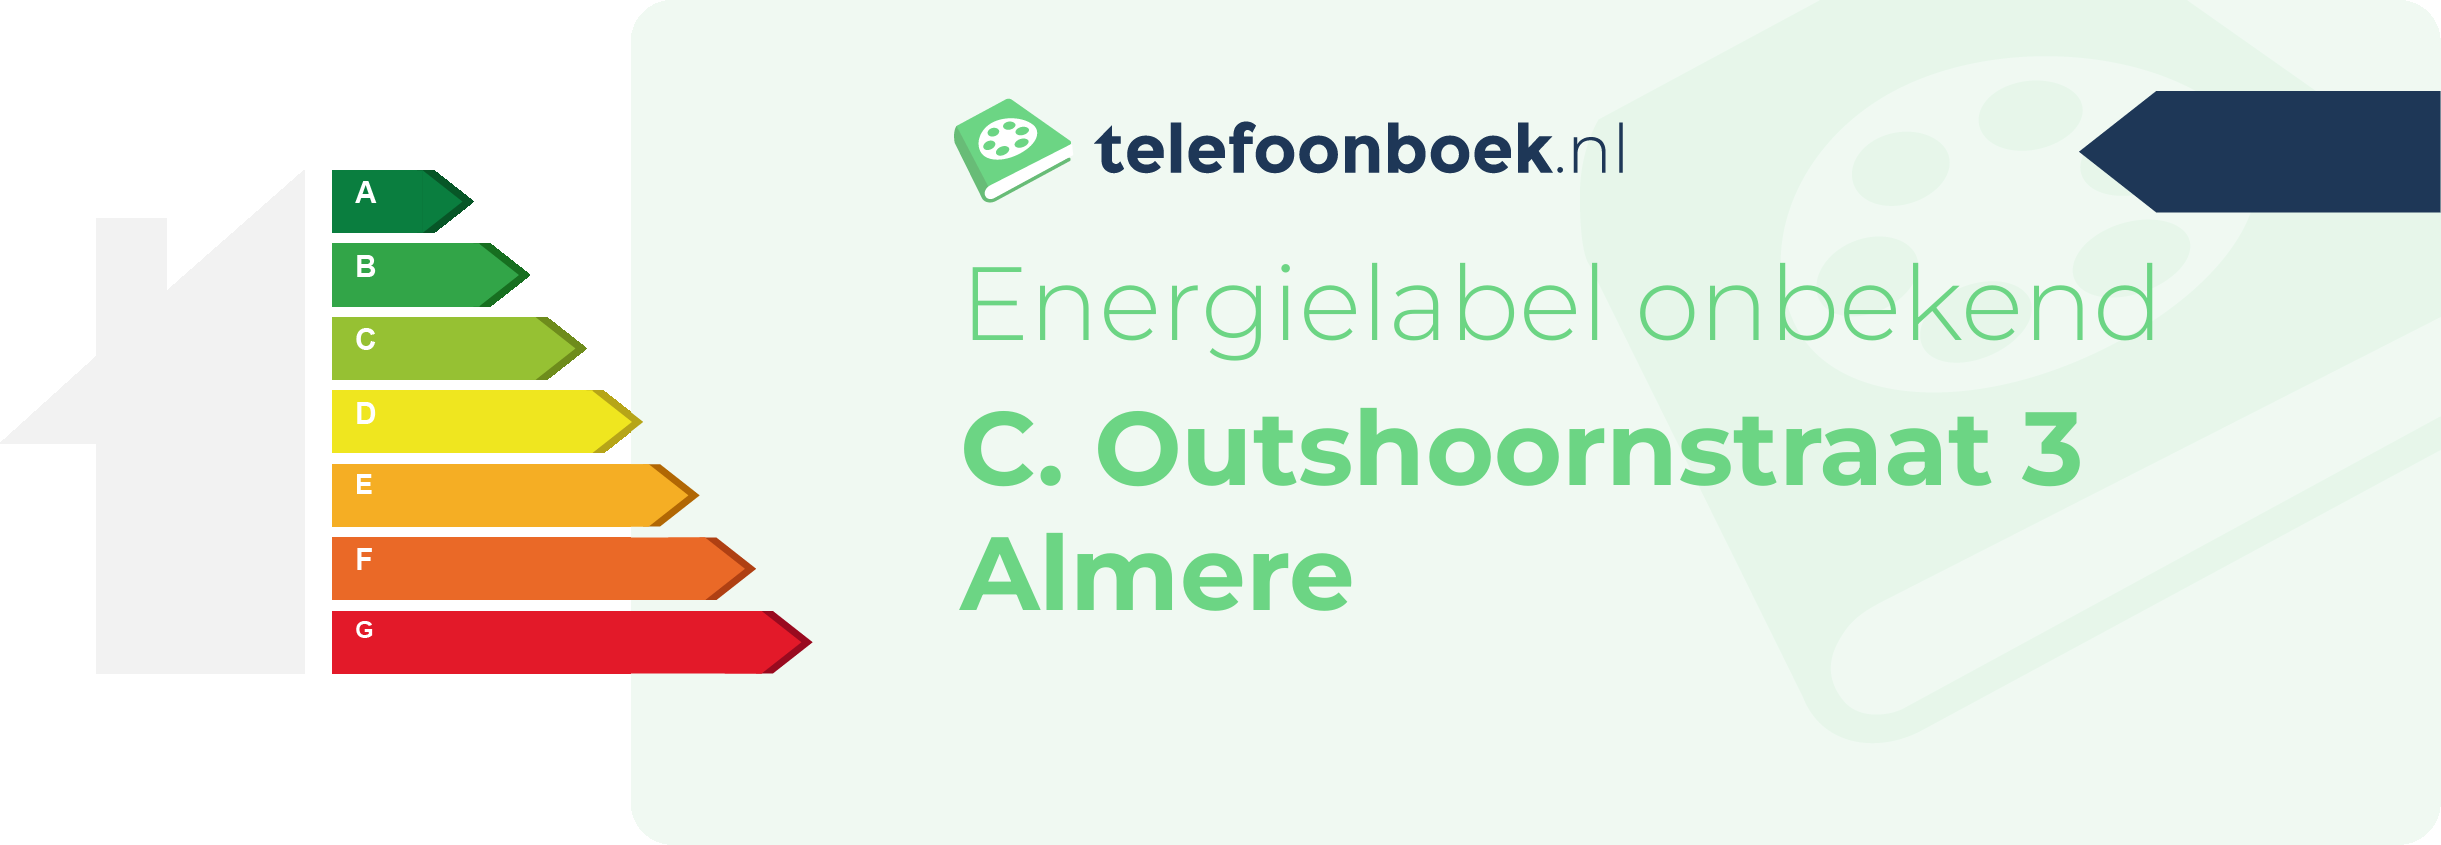 Energielabel C. Outshoornstraat 3 Almere